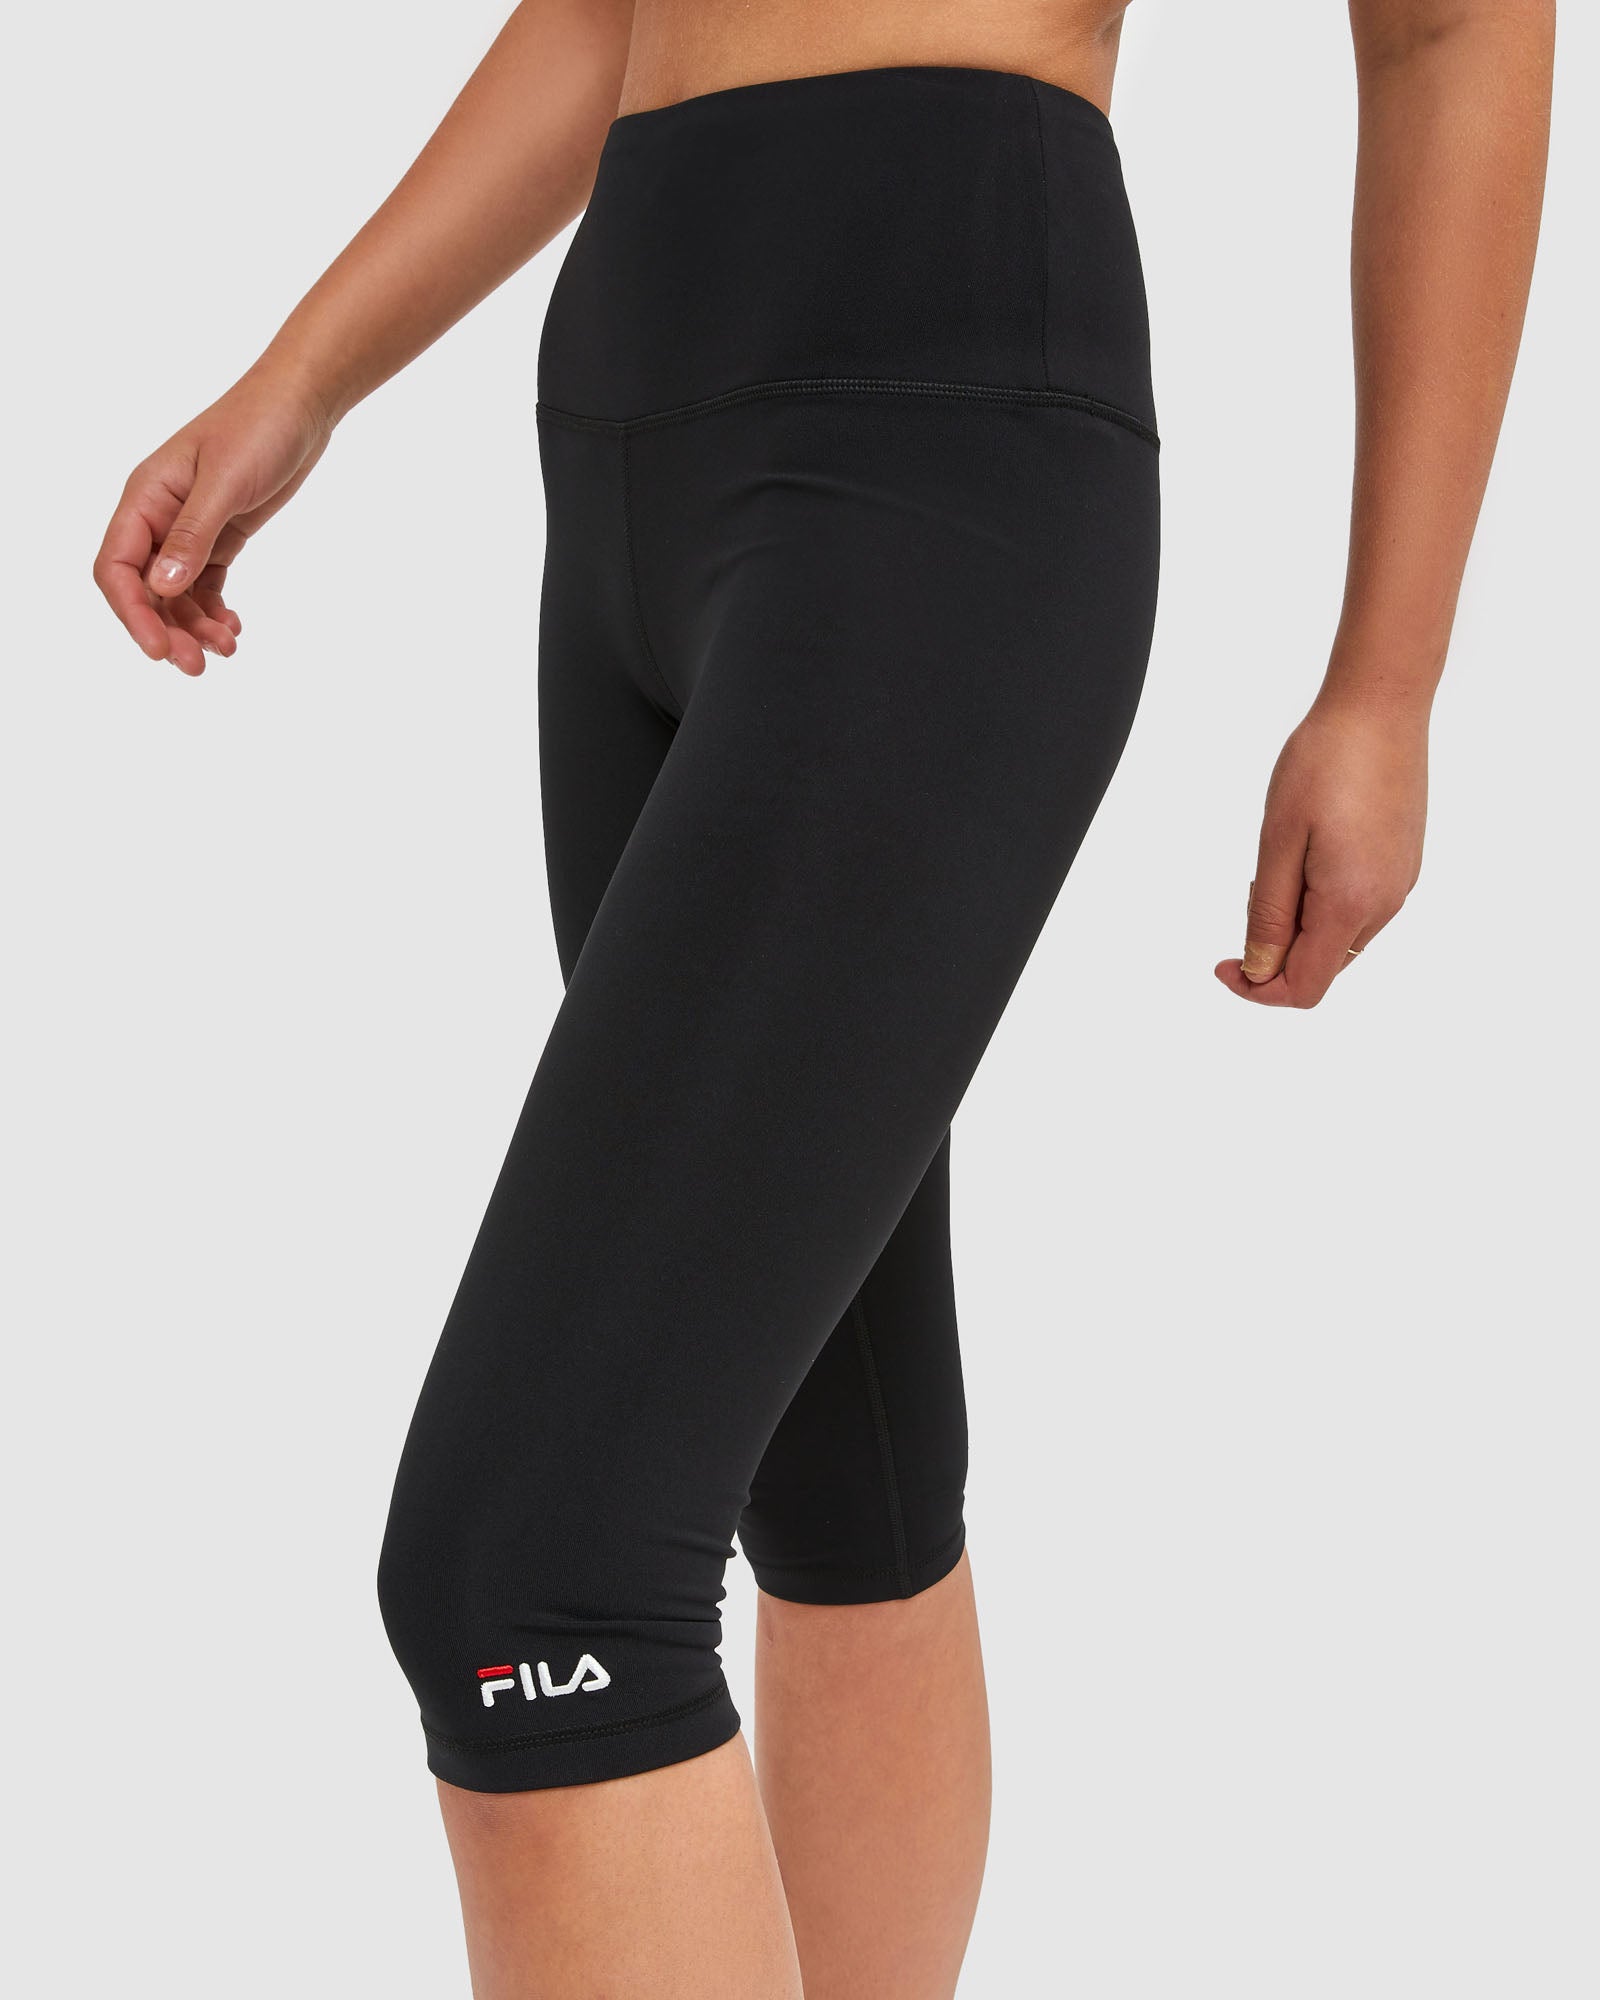 Fila Sport Teal and Black Skirted Capri Leggings Women's Size XS